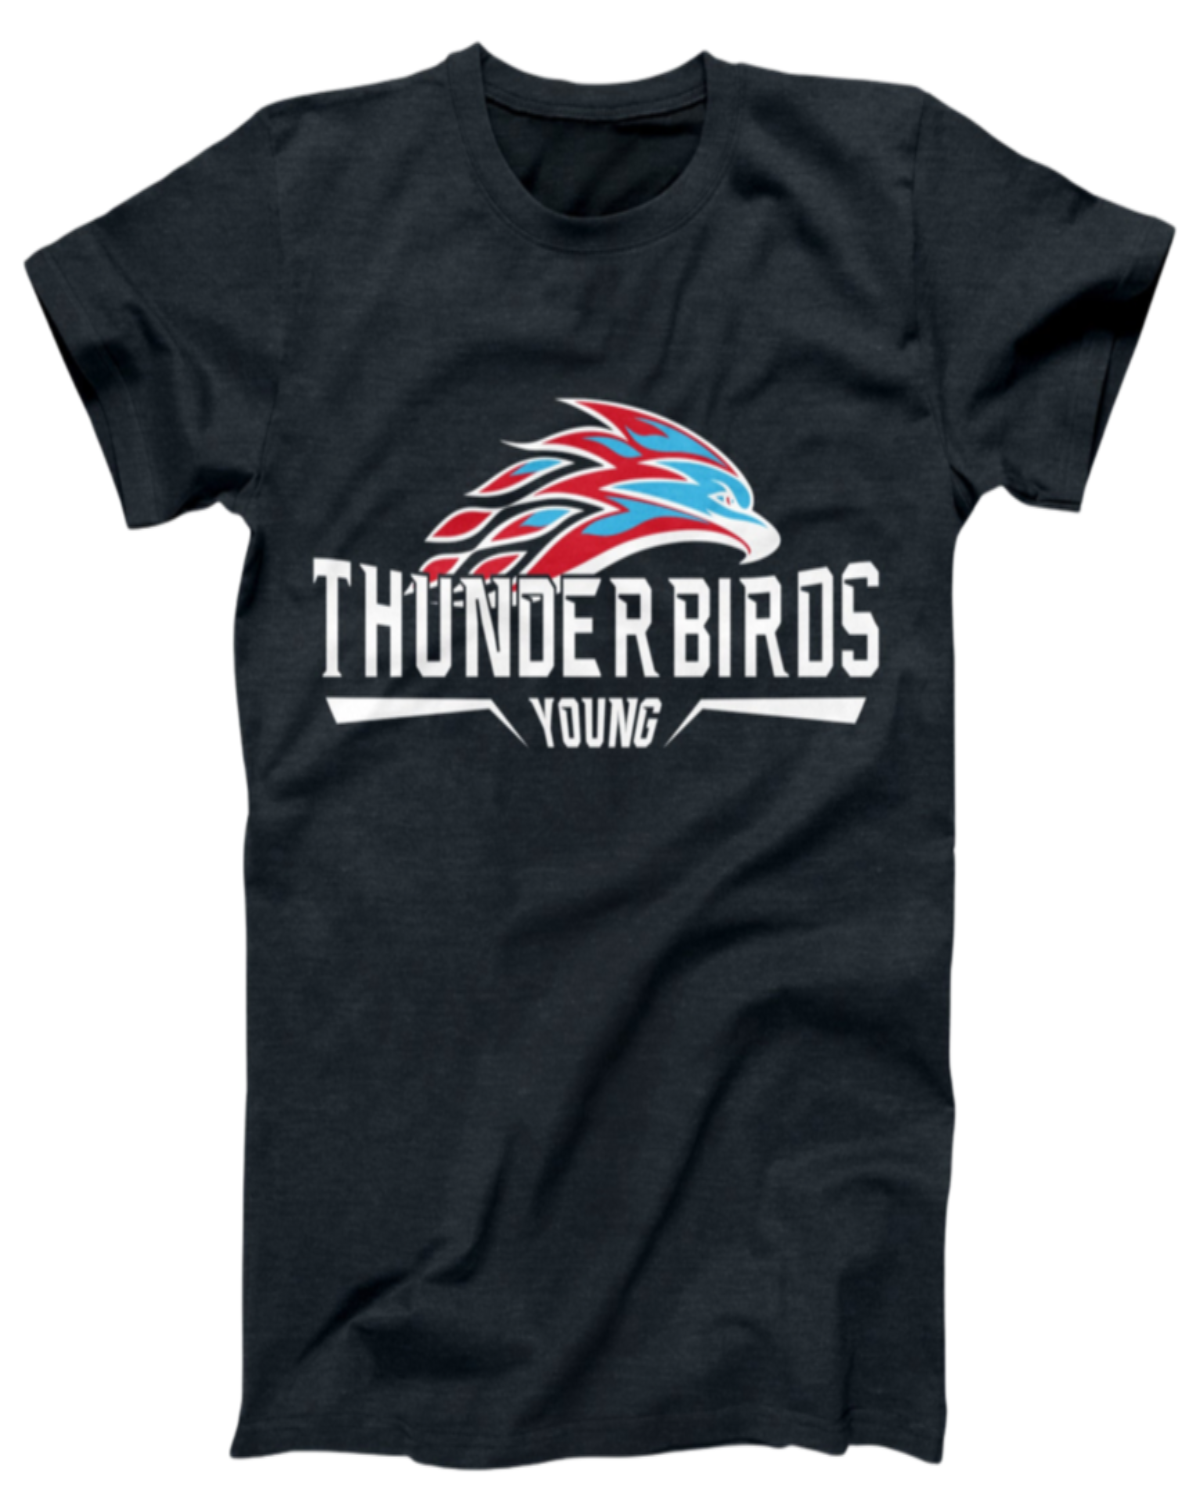 Young Thunderbird Logo Tee